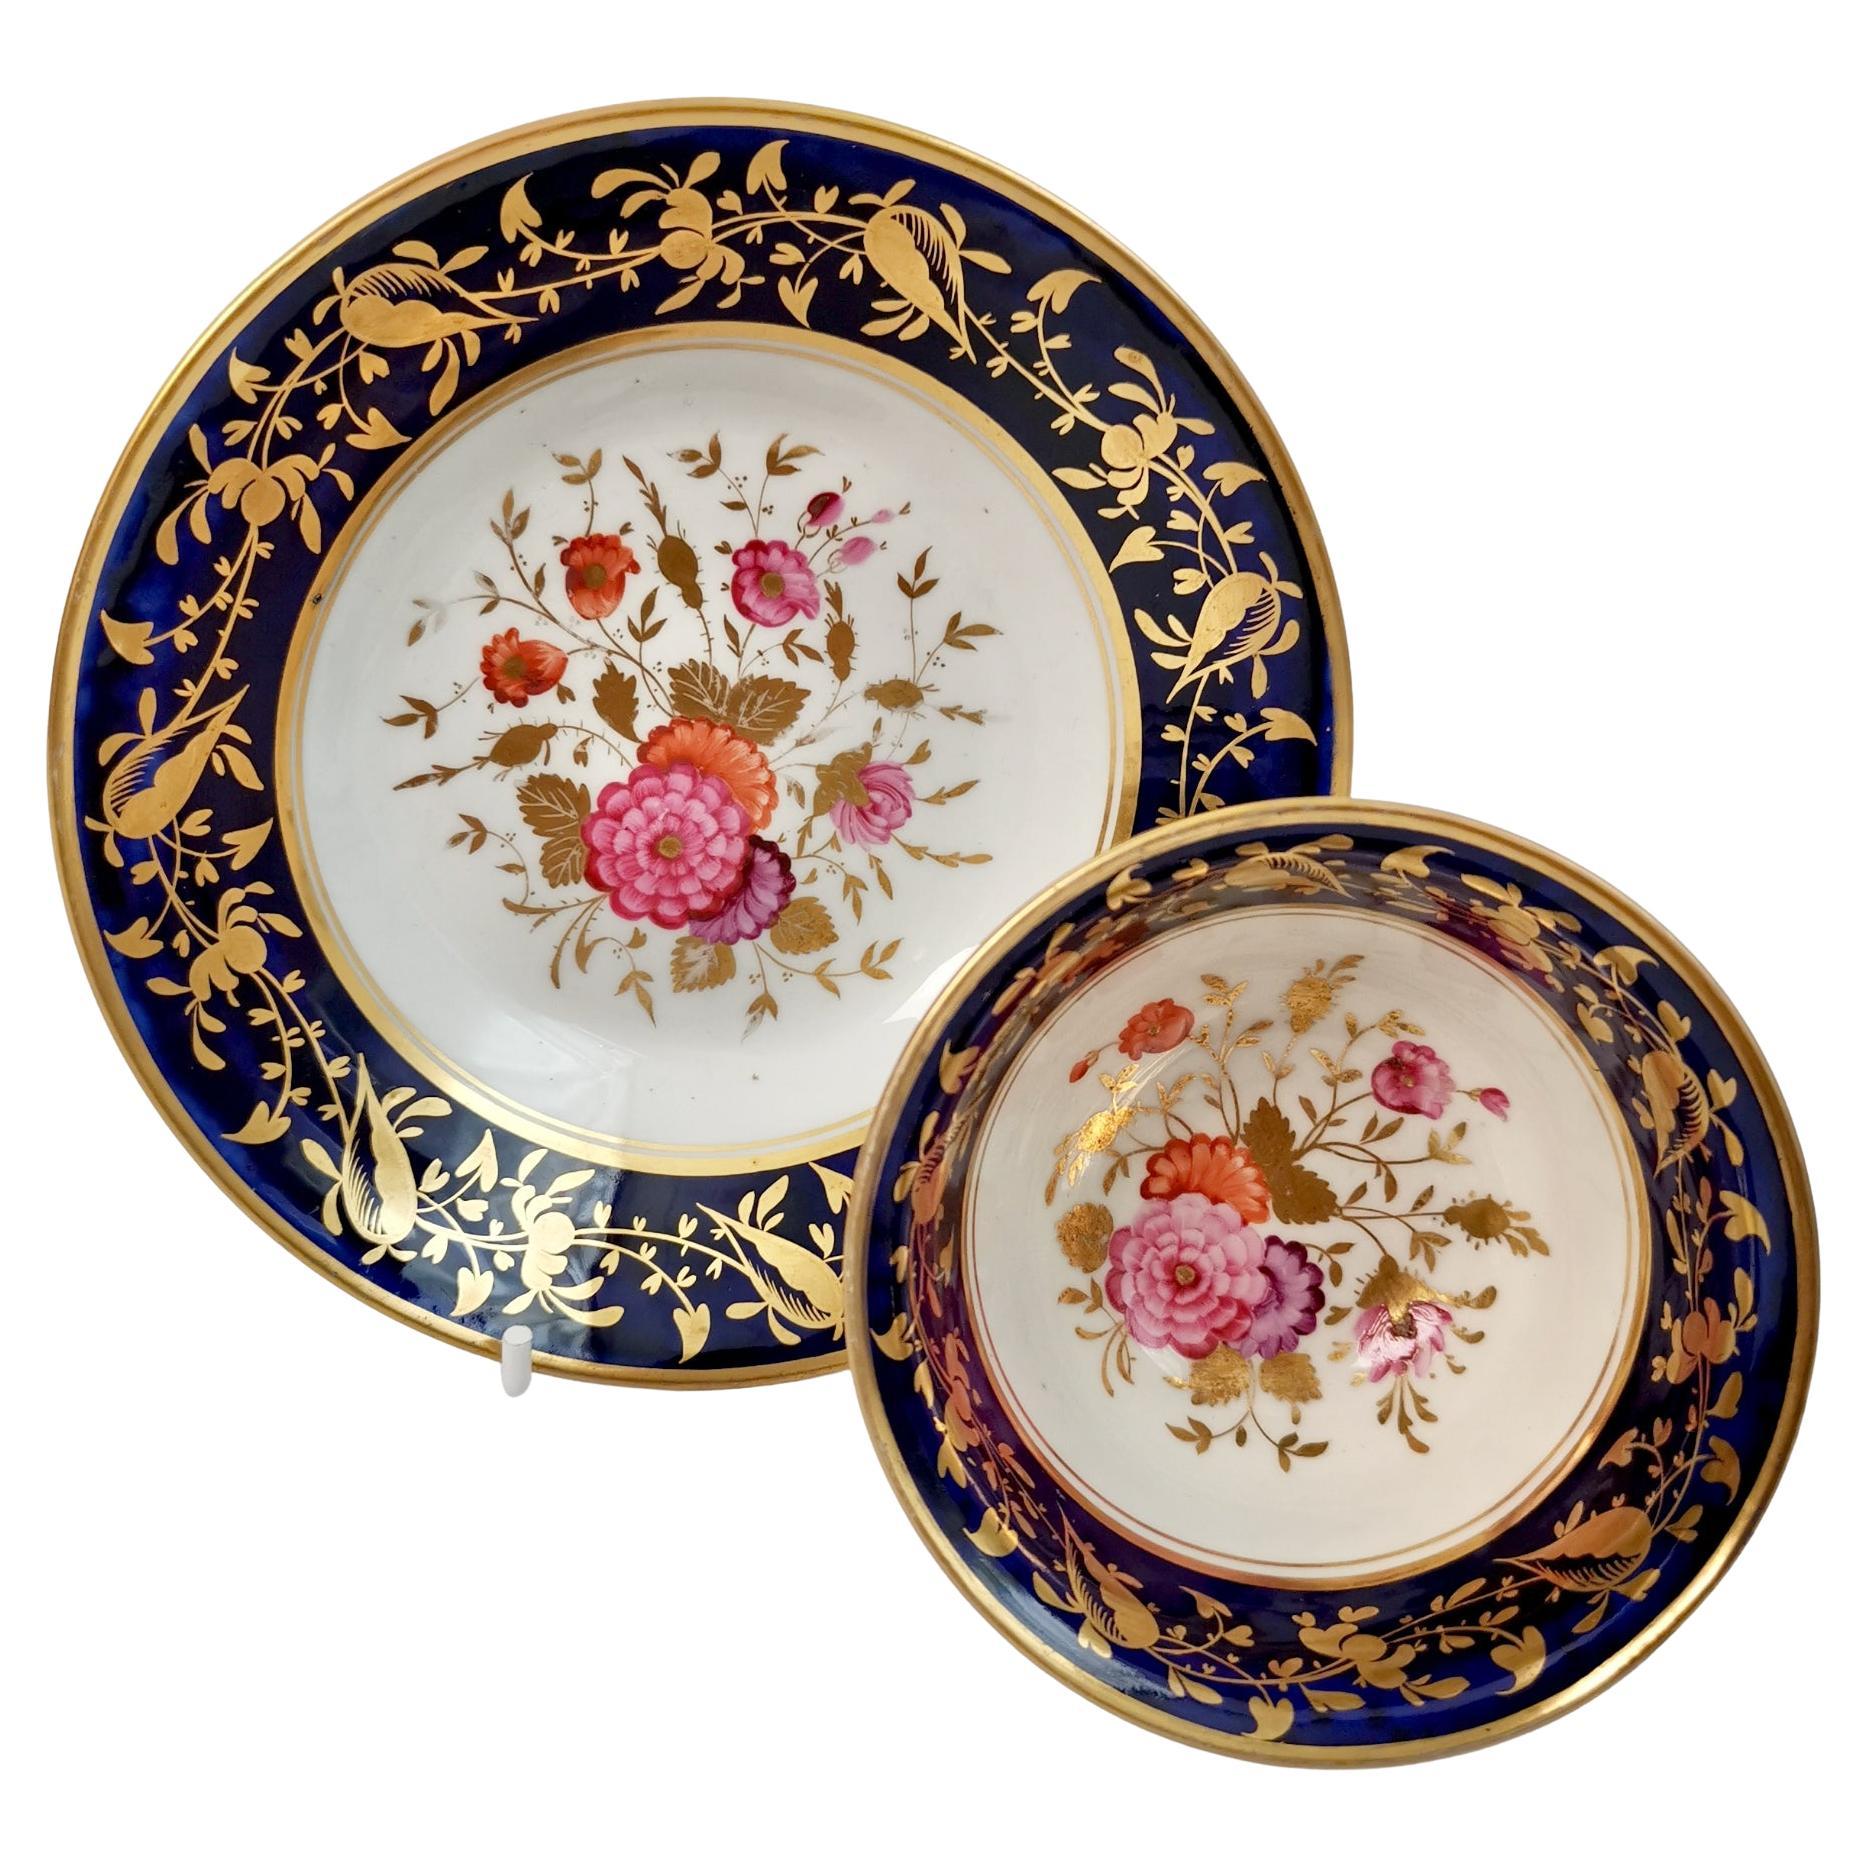 Rathbone Porcelain Teacup, Cobalt Blue, Gilt and Flowers, Regency ca 1815